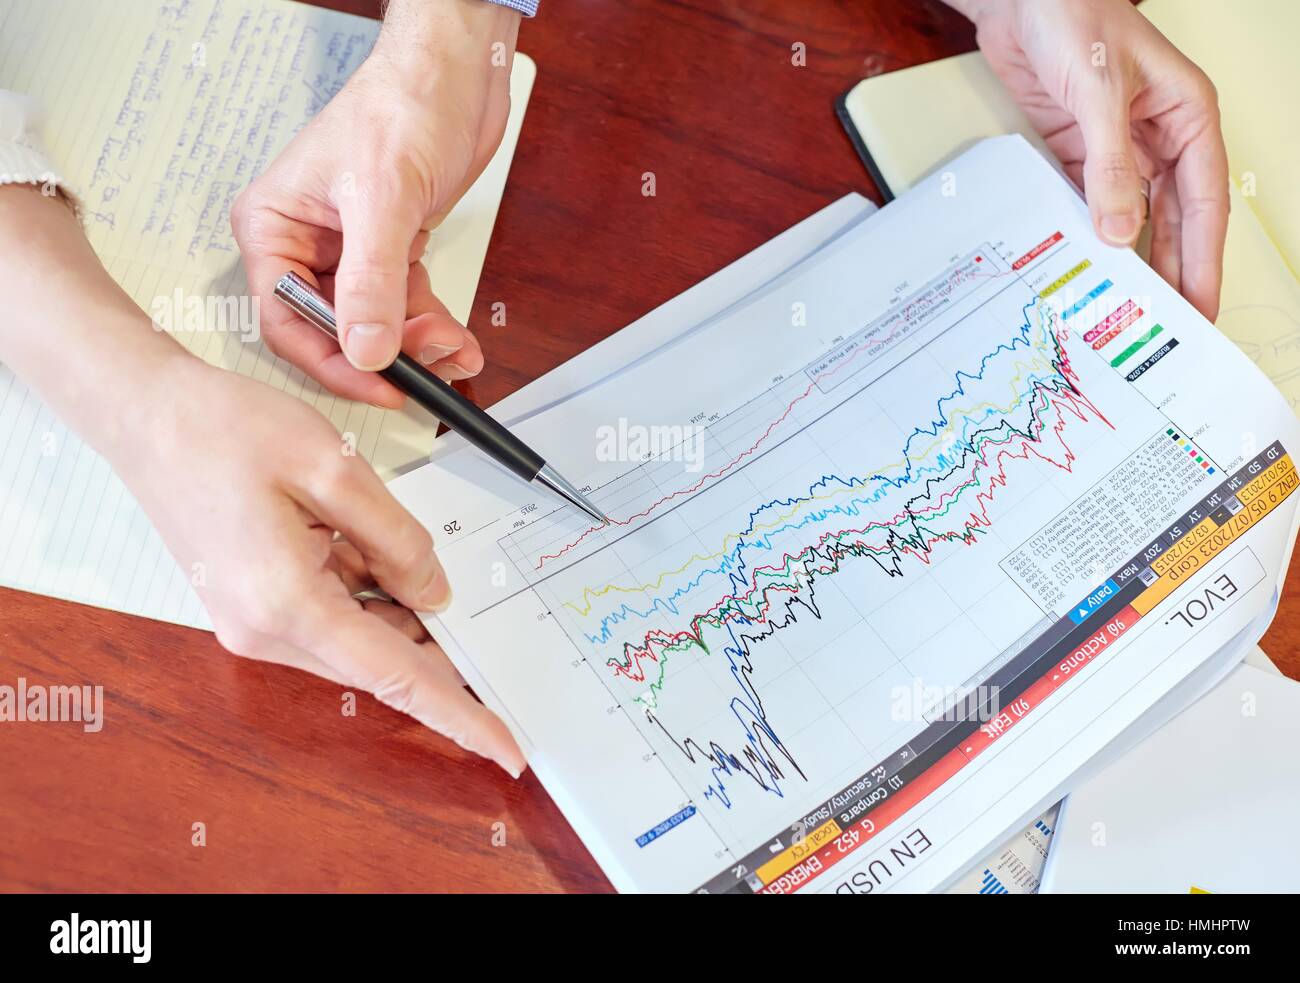 Stockbroker. Stock market. Charts Stock Photo